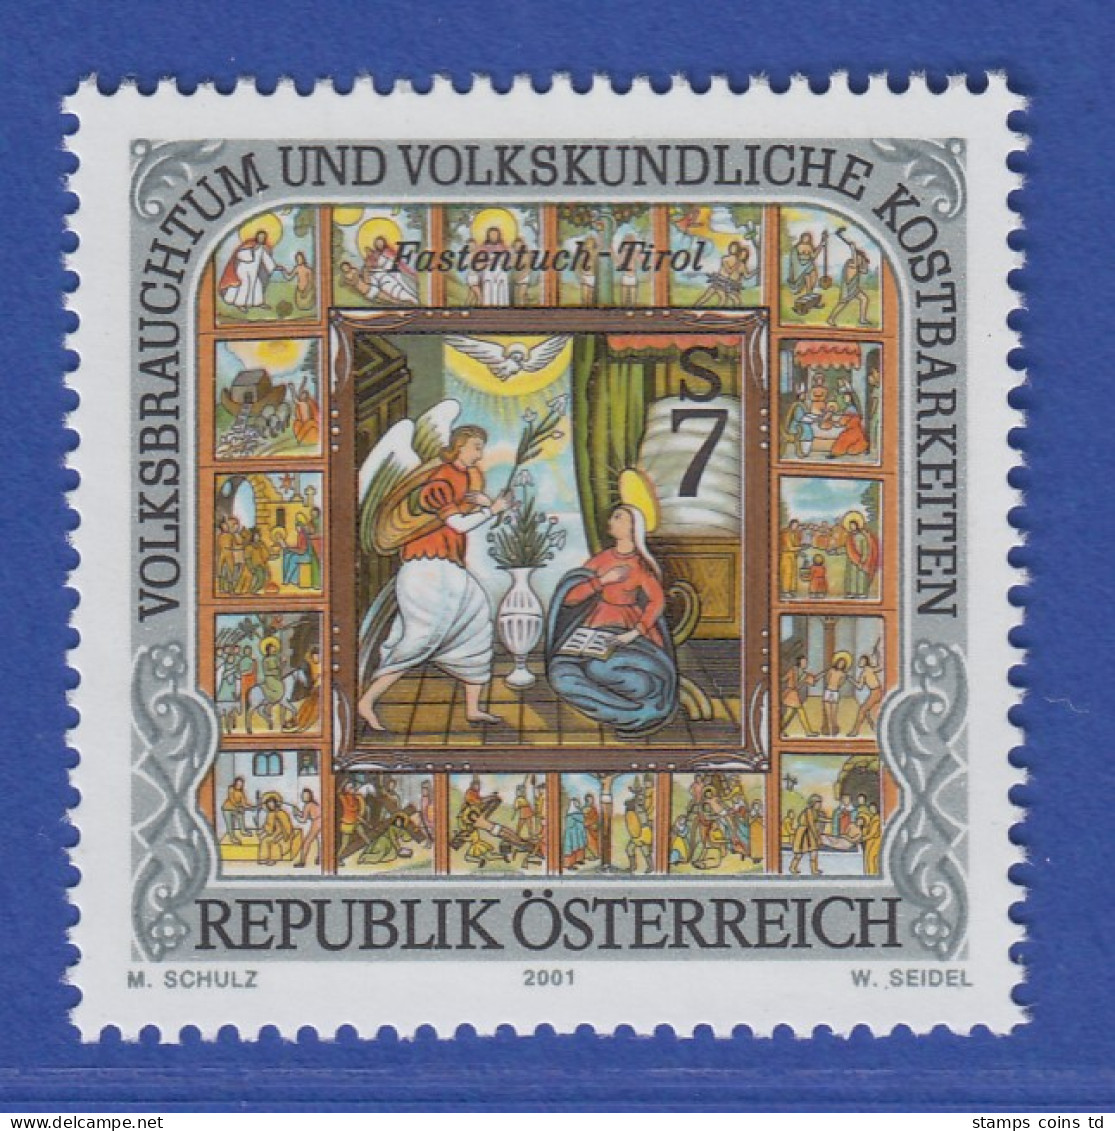 Österreich 2001 Sondermarke Volsbrauchtum Osttiroler Fastentuch Mi.-Nr. 2343 - Neufs